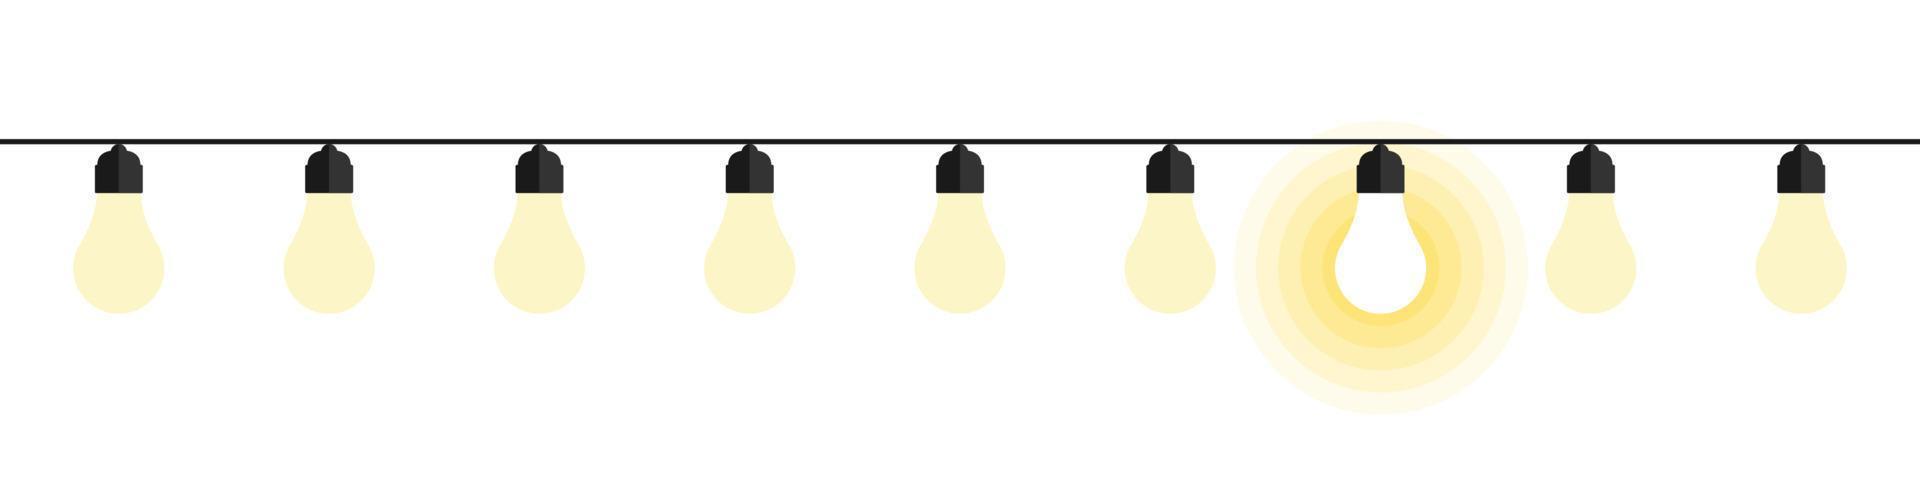 les ampoules. notion d'idée. ampoules style plat avec lueur jaune. illustration de symbole d'idées. illustration vectorielle vecteur